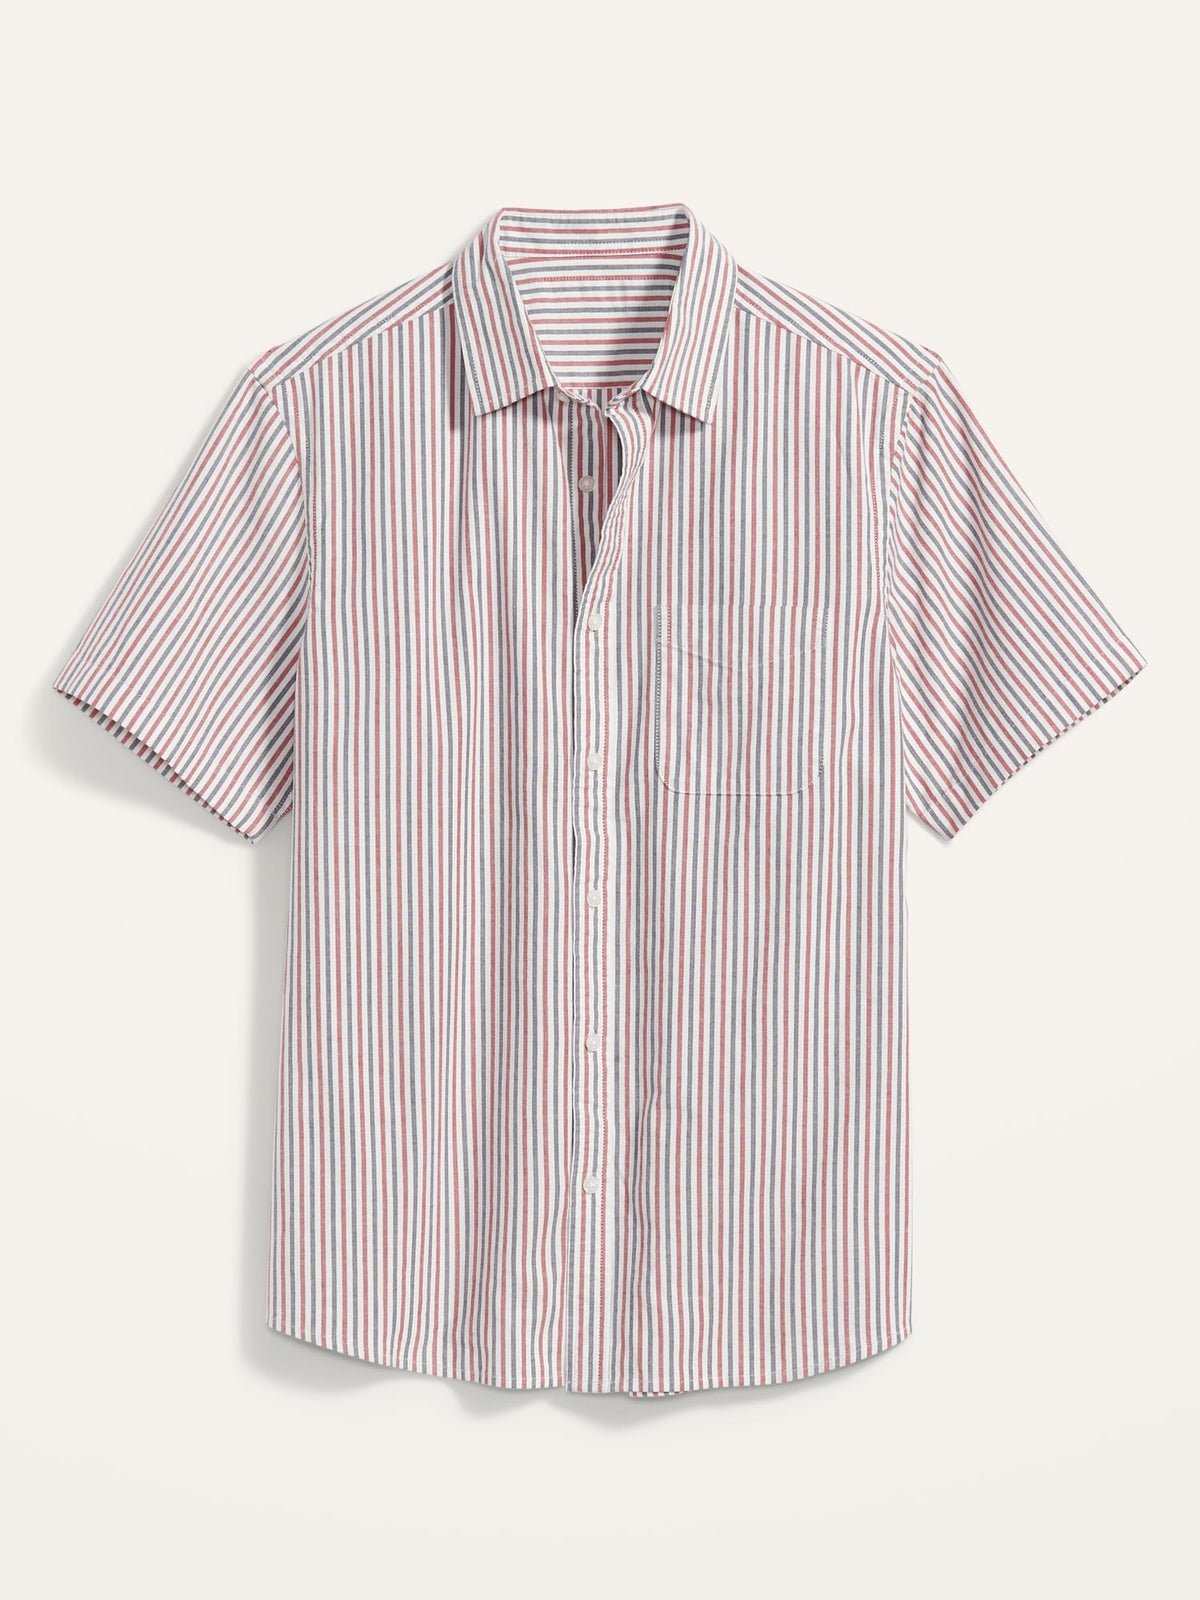 Everyday Built-In Flex Matching Stripe Short-Sleeve Shirt for Men_StripeUpTheBand_1650.jpeg